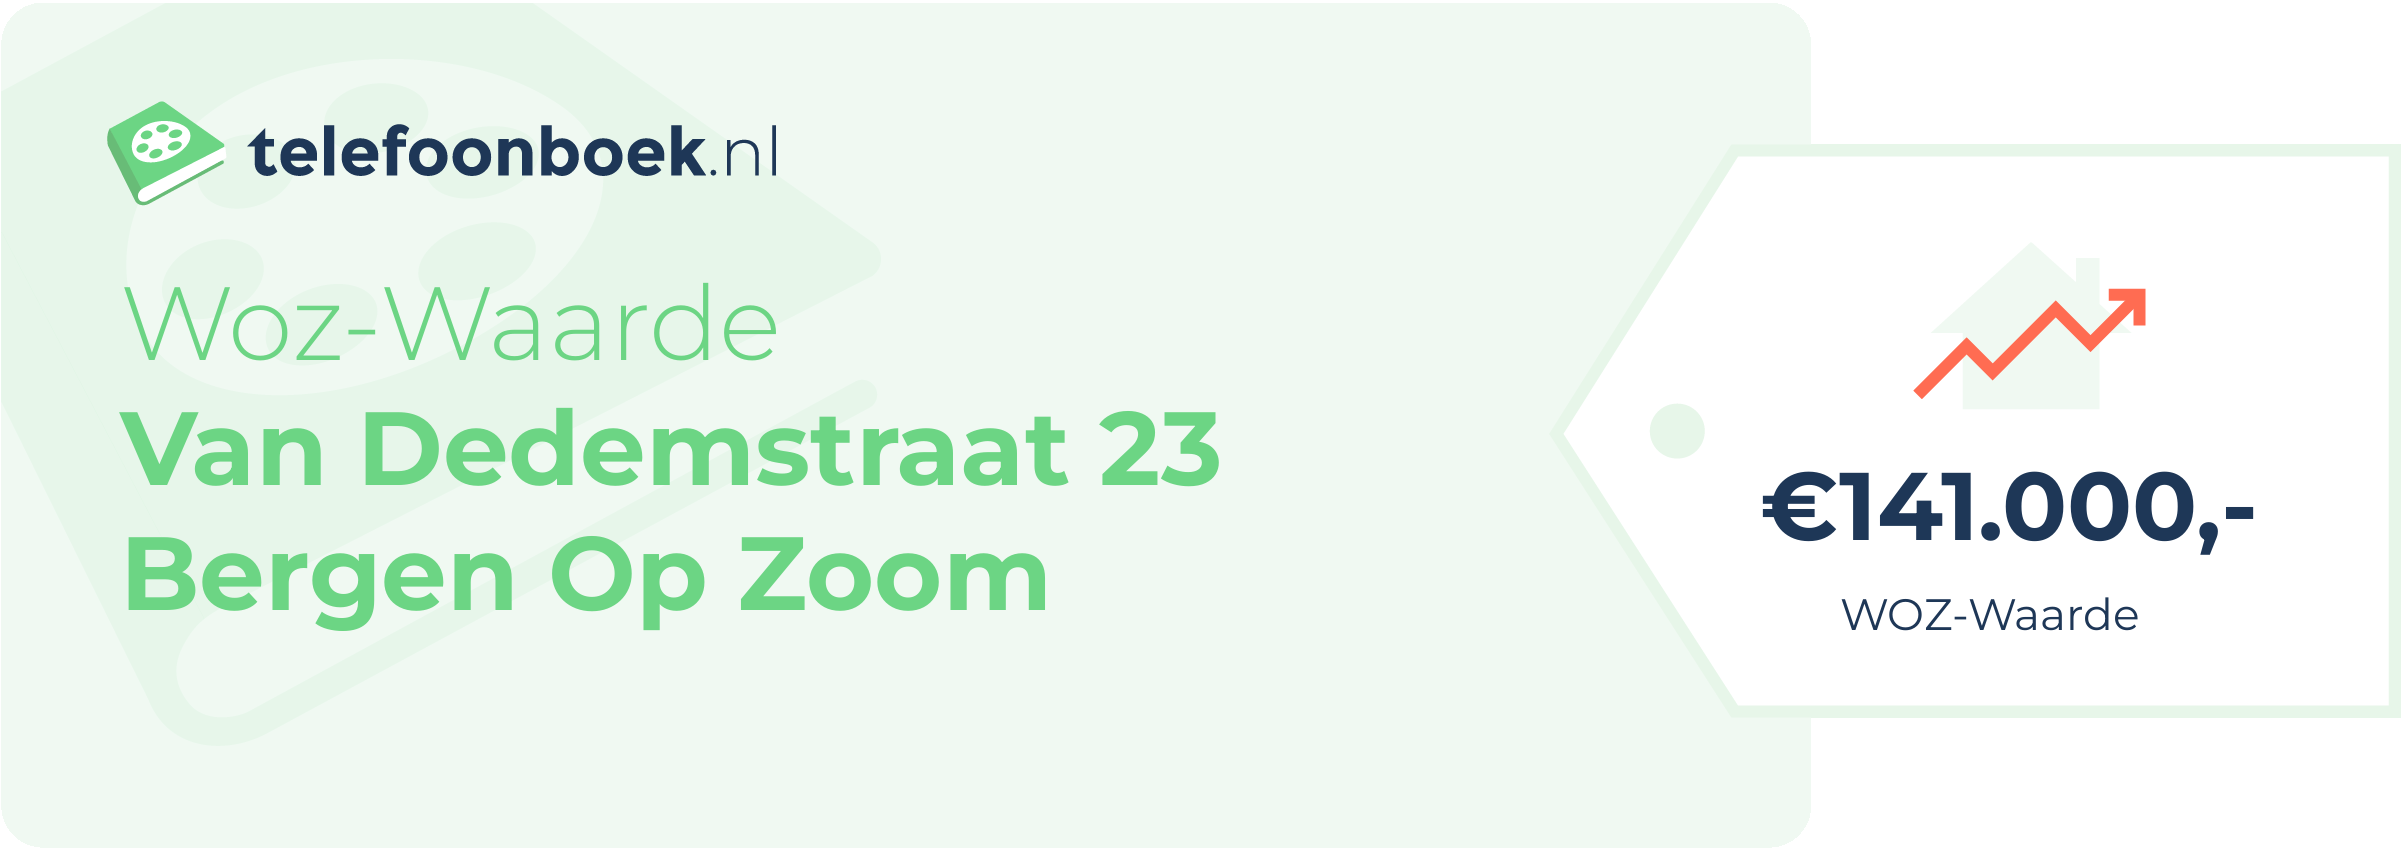 WOZ-waarde Van Dedemstraat 23 Bergen Op Zoom